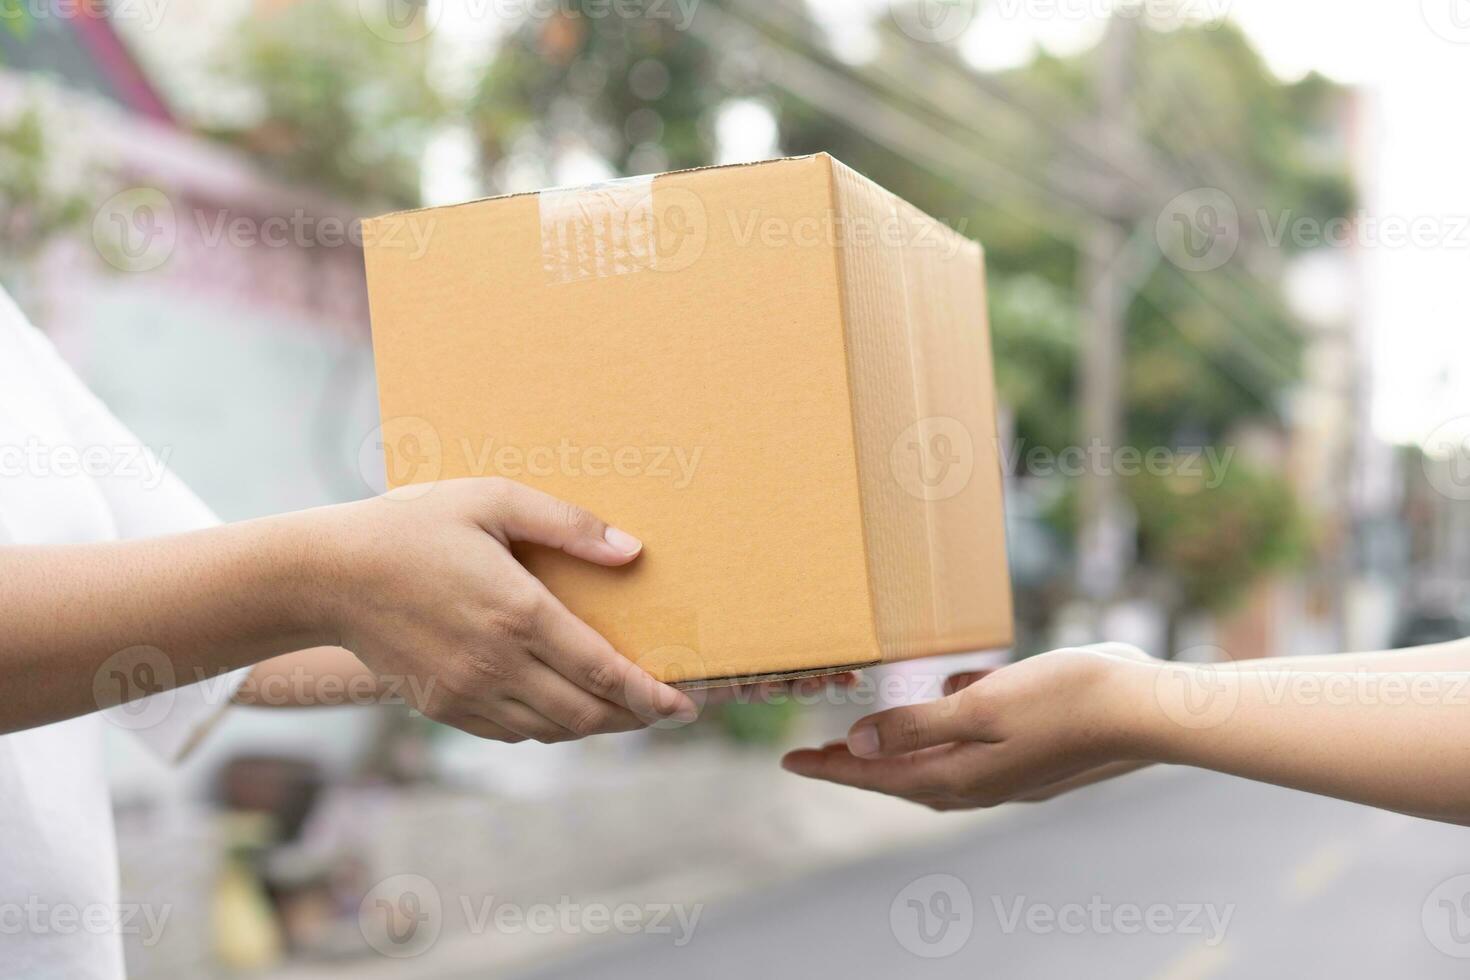 postal serviço enviando papel cartão caixa para cliente dentro frente do uma casa ar livre. Remessa serviço chegada e mandar para cliente endereço. foto